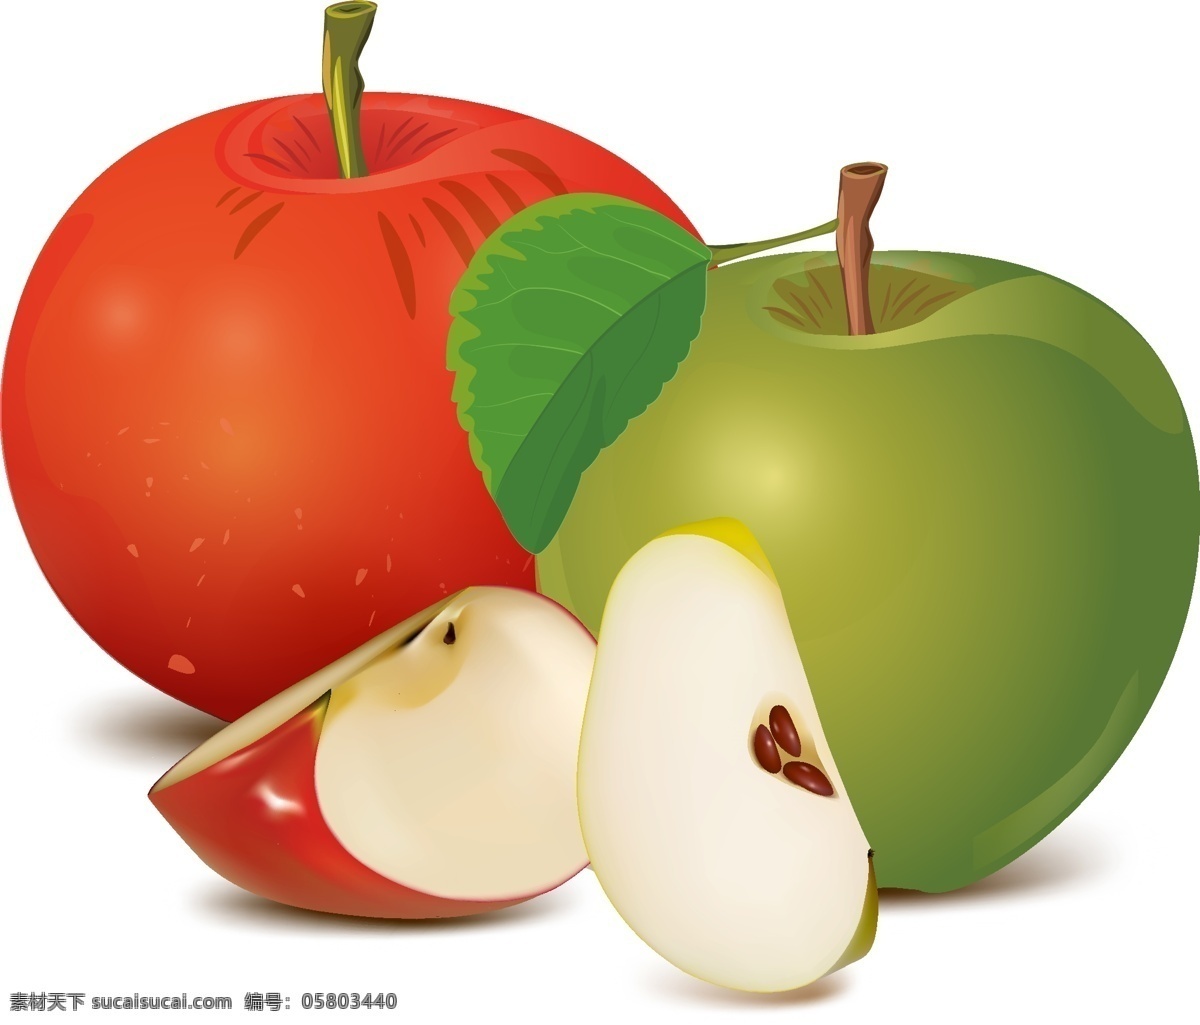 矢量 手绘 卡通 水果 免抠透明设计 免抠 夏日水果苹果 苹果切两半 绿色大苹果 红色大苹果 小苹果